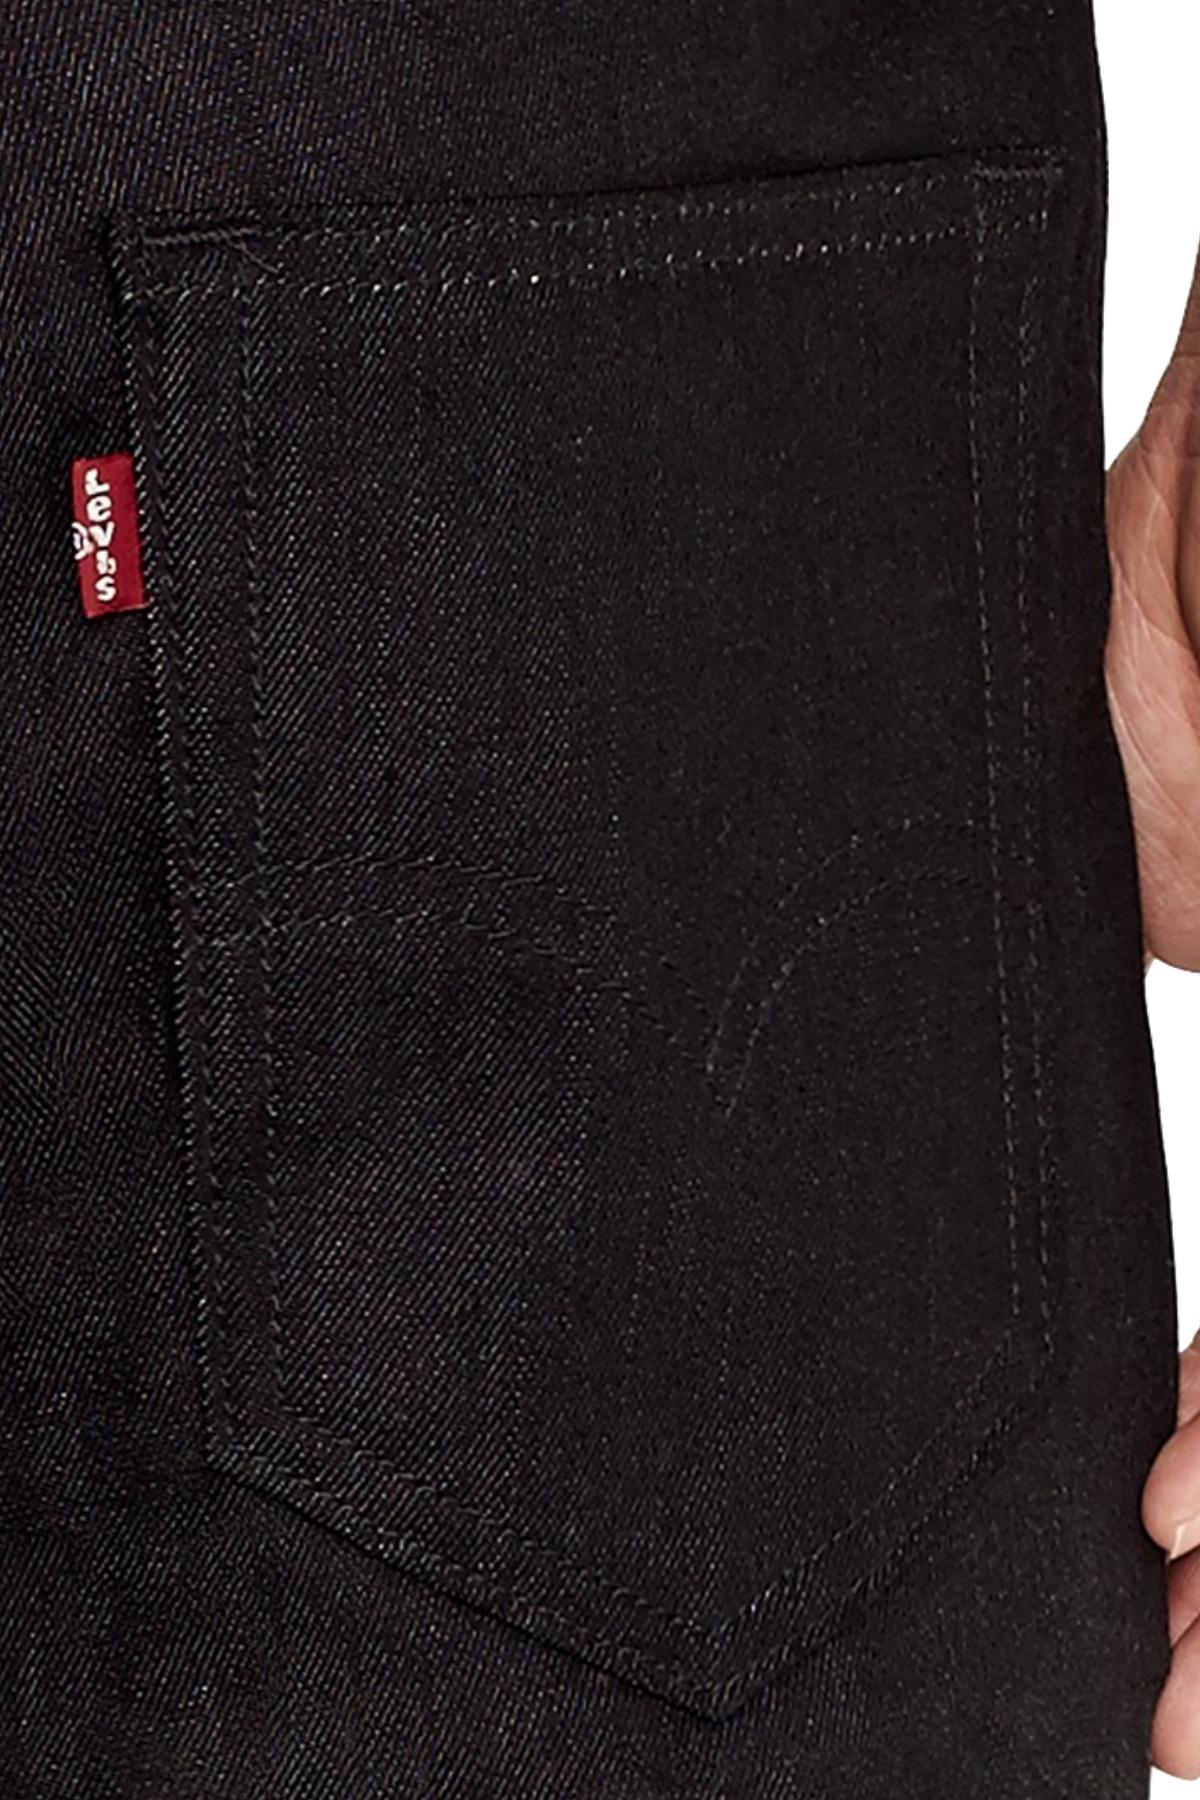 Levi's Black/Rigid 3M-Reflective  511™ Slim-Fit Commuter Jeans